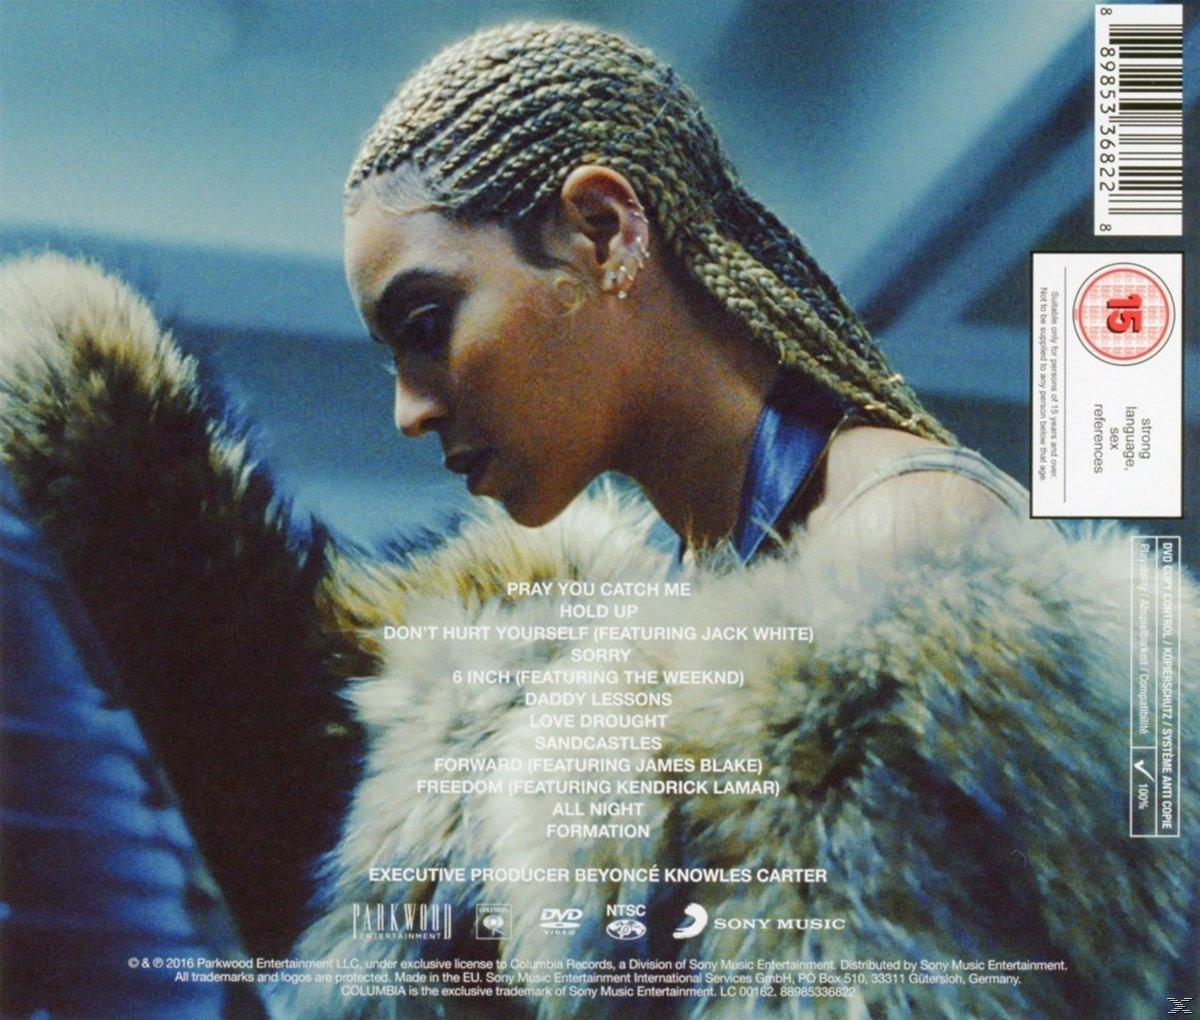 Beyoncé - - (CD) Lemonade